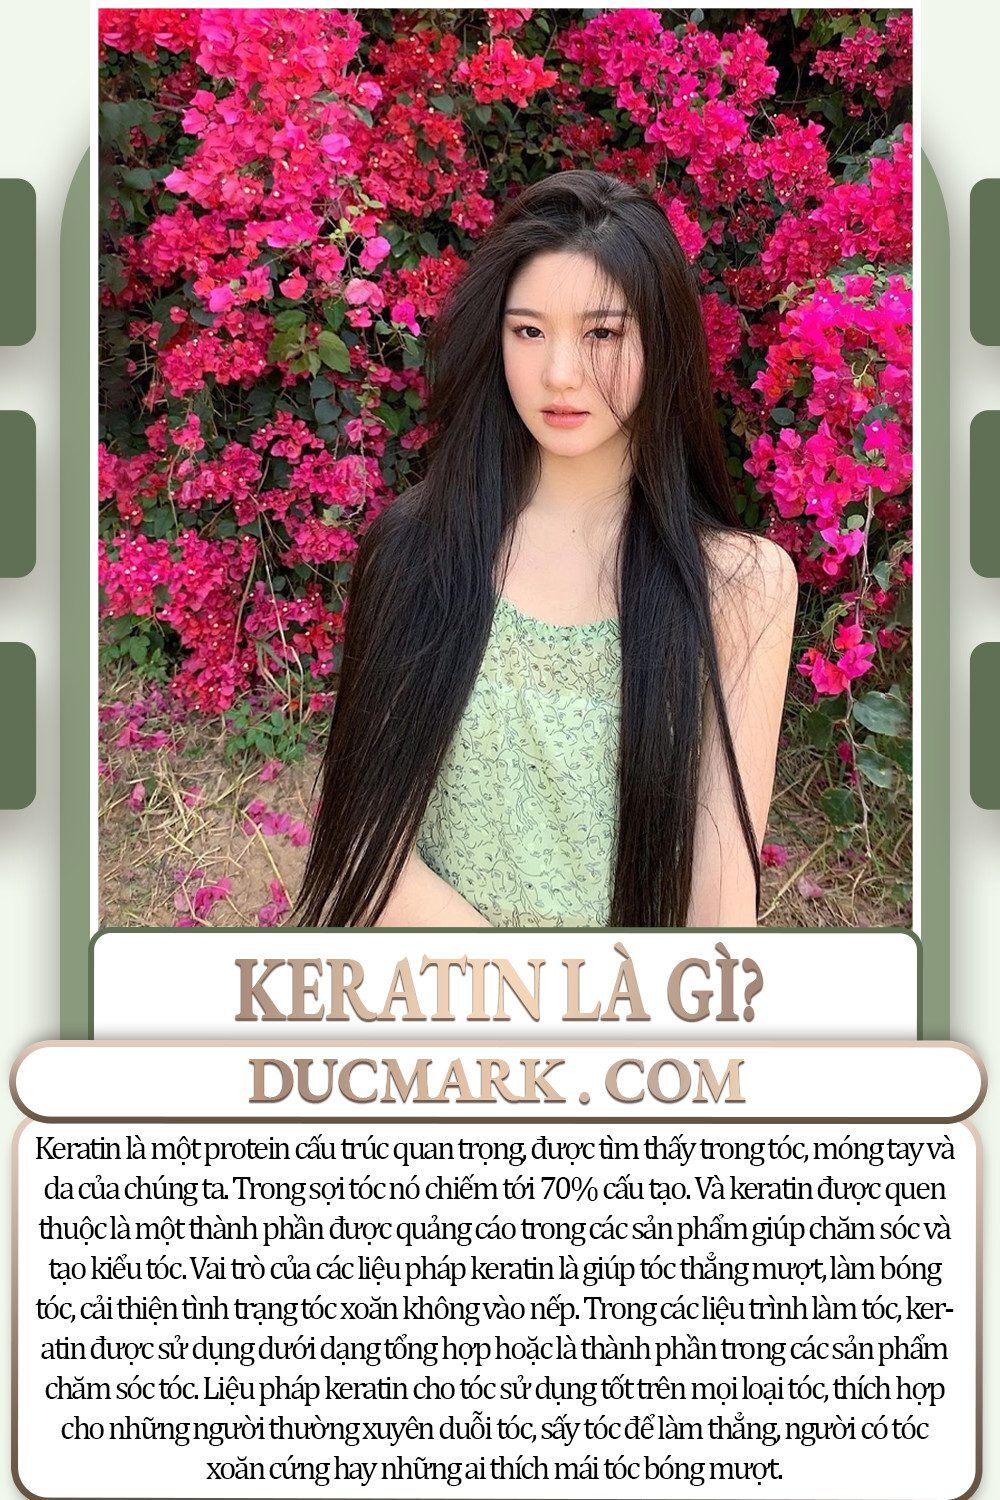 Bọc Keratin là liệu pháp chăm sóc đặc biệt nhằm cung cấp Keratin phục hồi mái tóc hư tổn